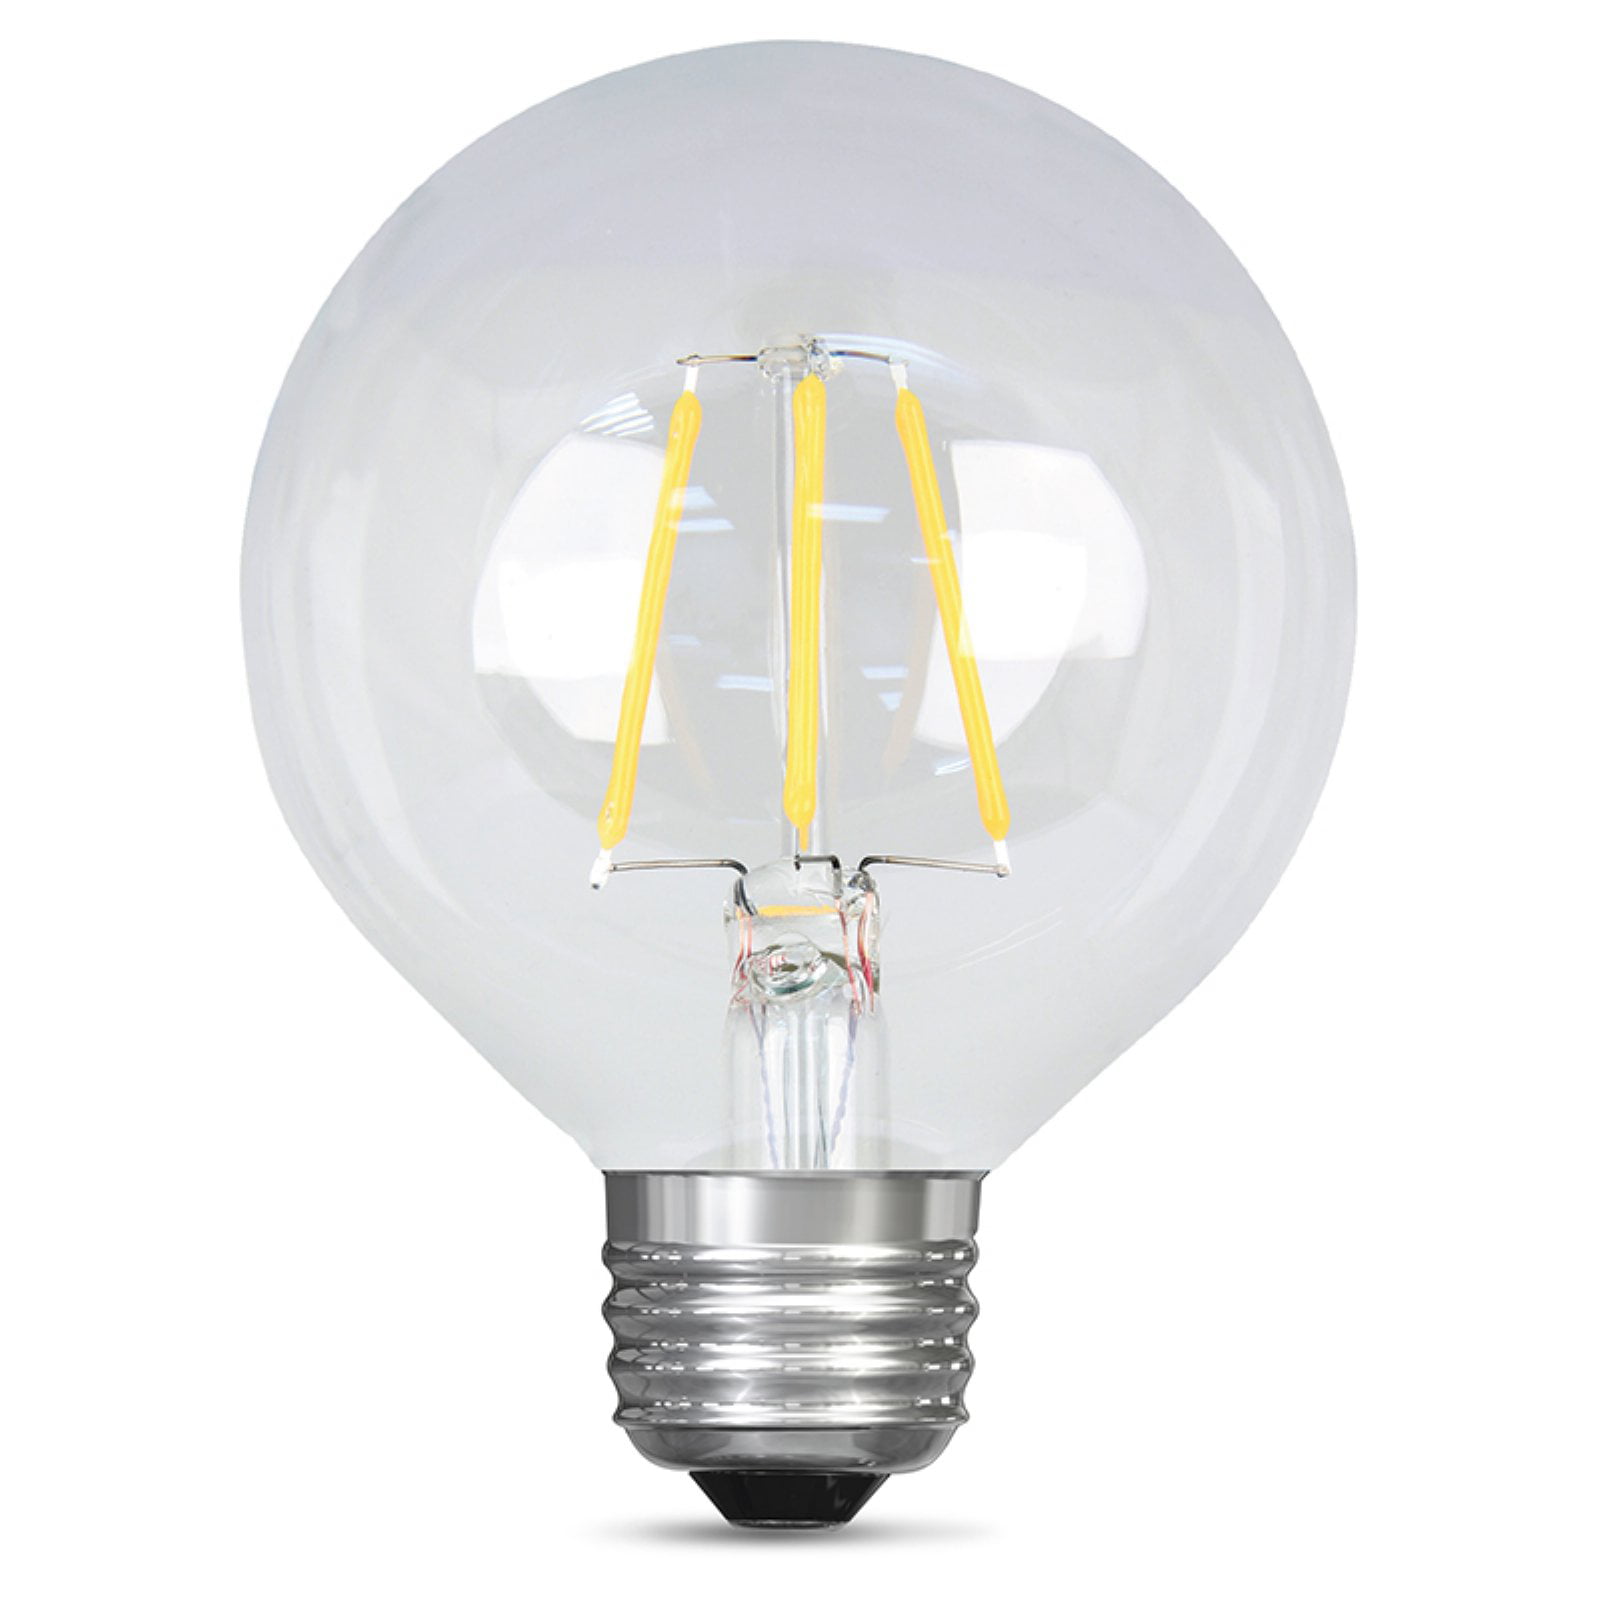 NEW FEIT ELECTRIC G25 LED Light Bulb Daylight 8.5 Watts Equals 40 Watt E26 